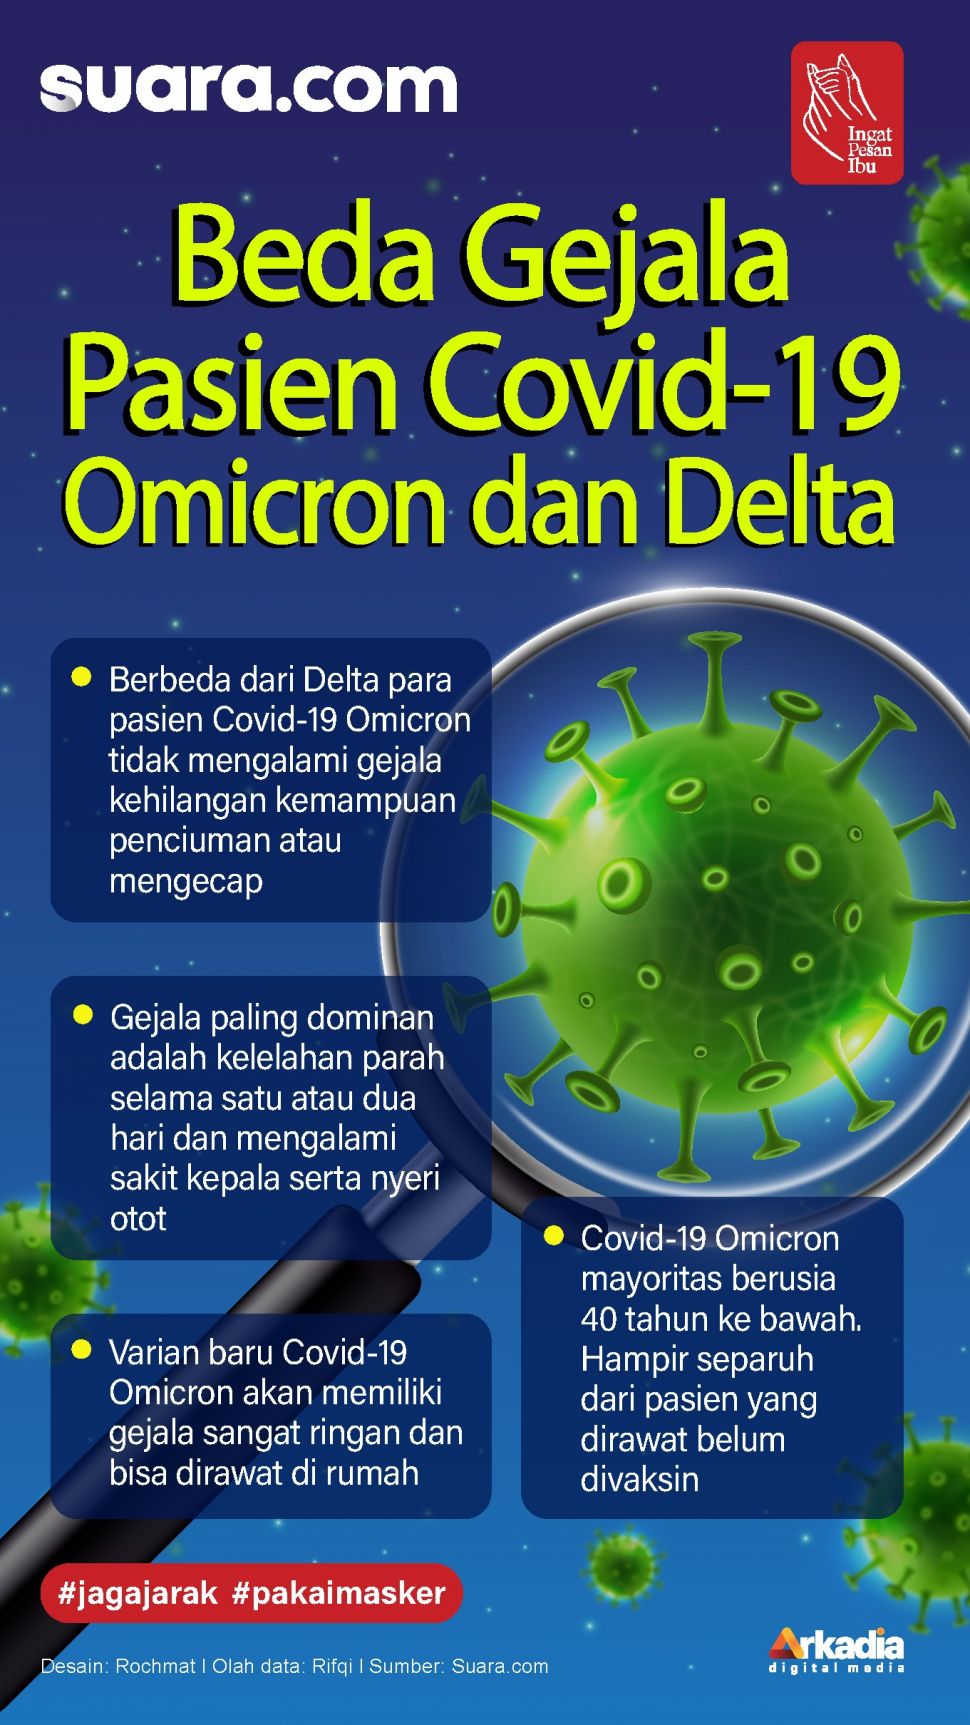 Pasien yang terinfeksi varian baru Covid-19 Omicron akan memiliki gejala sangat ringan dan bisa dirawat di rumah